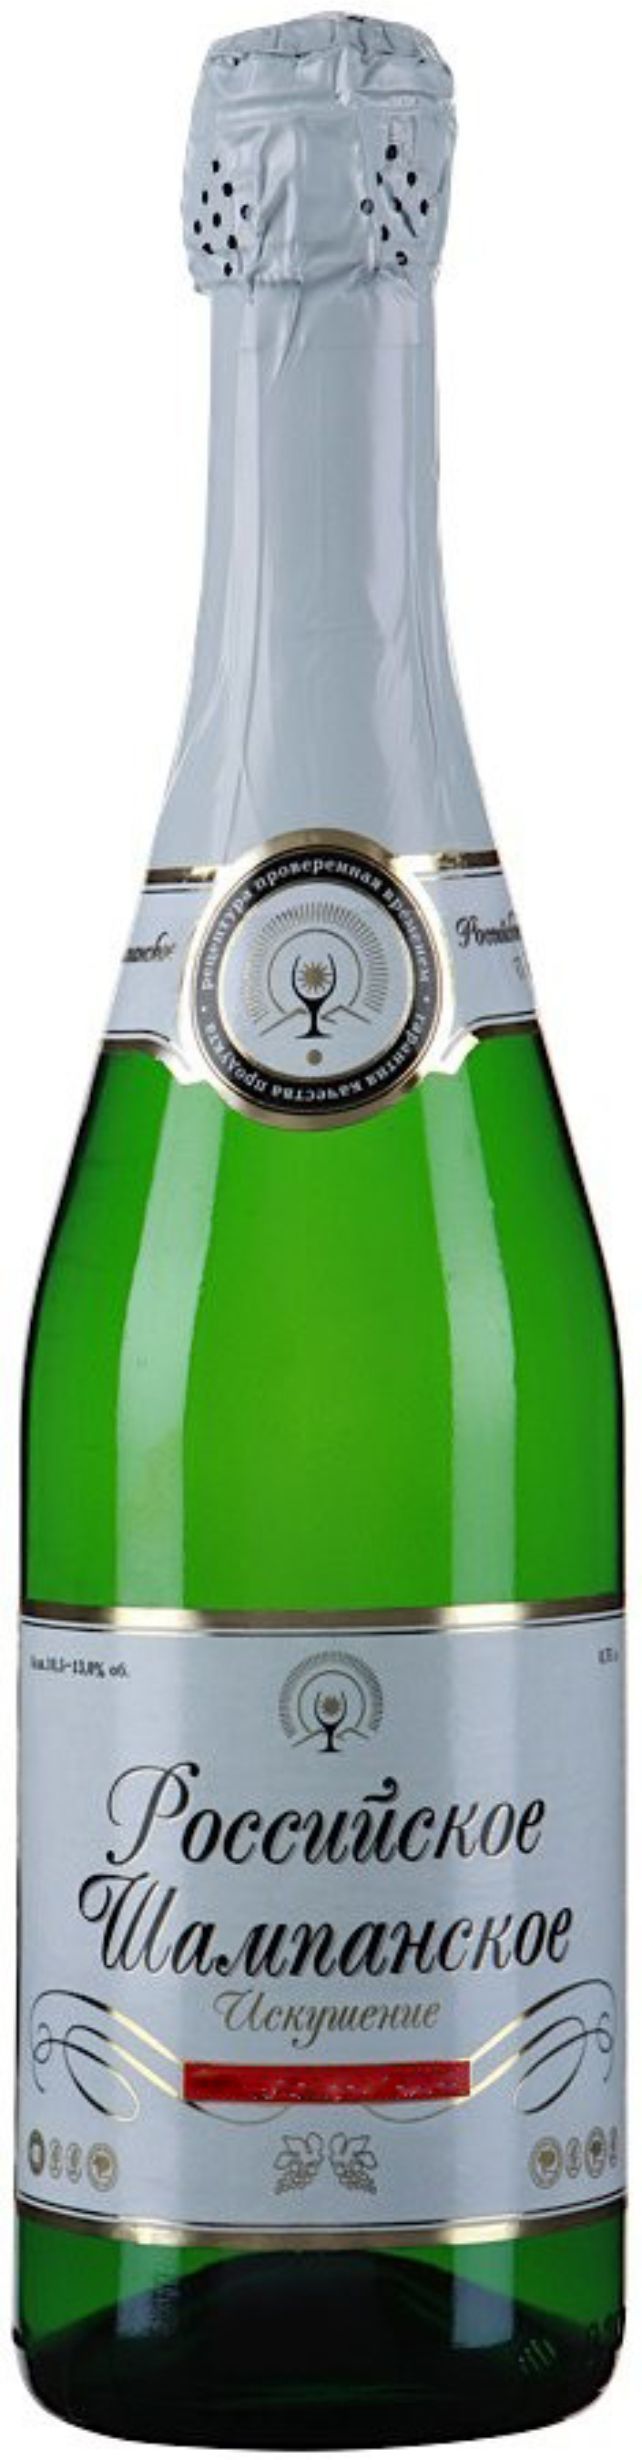 Игристое вино Российское Шампанское "Искушение", белое брют, 0.75 л